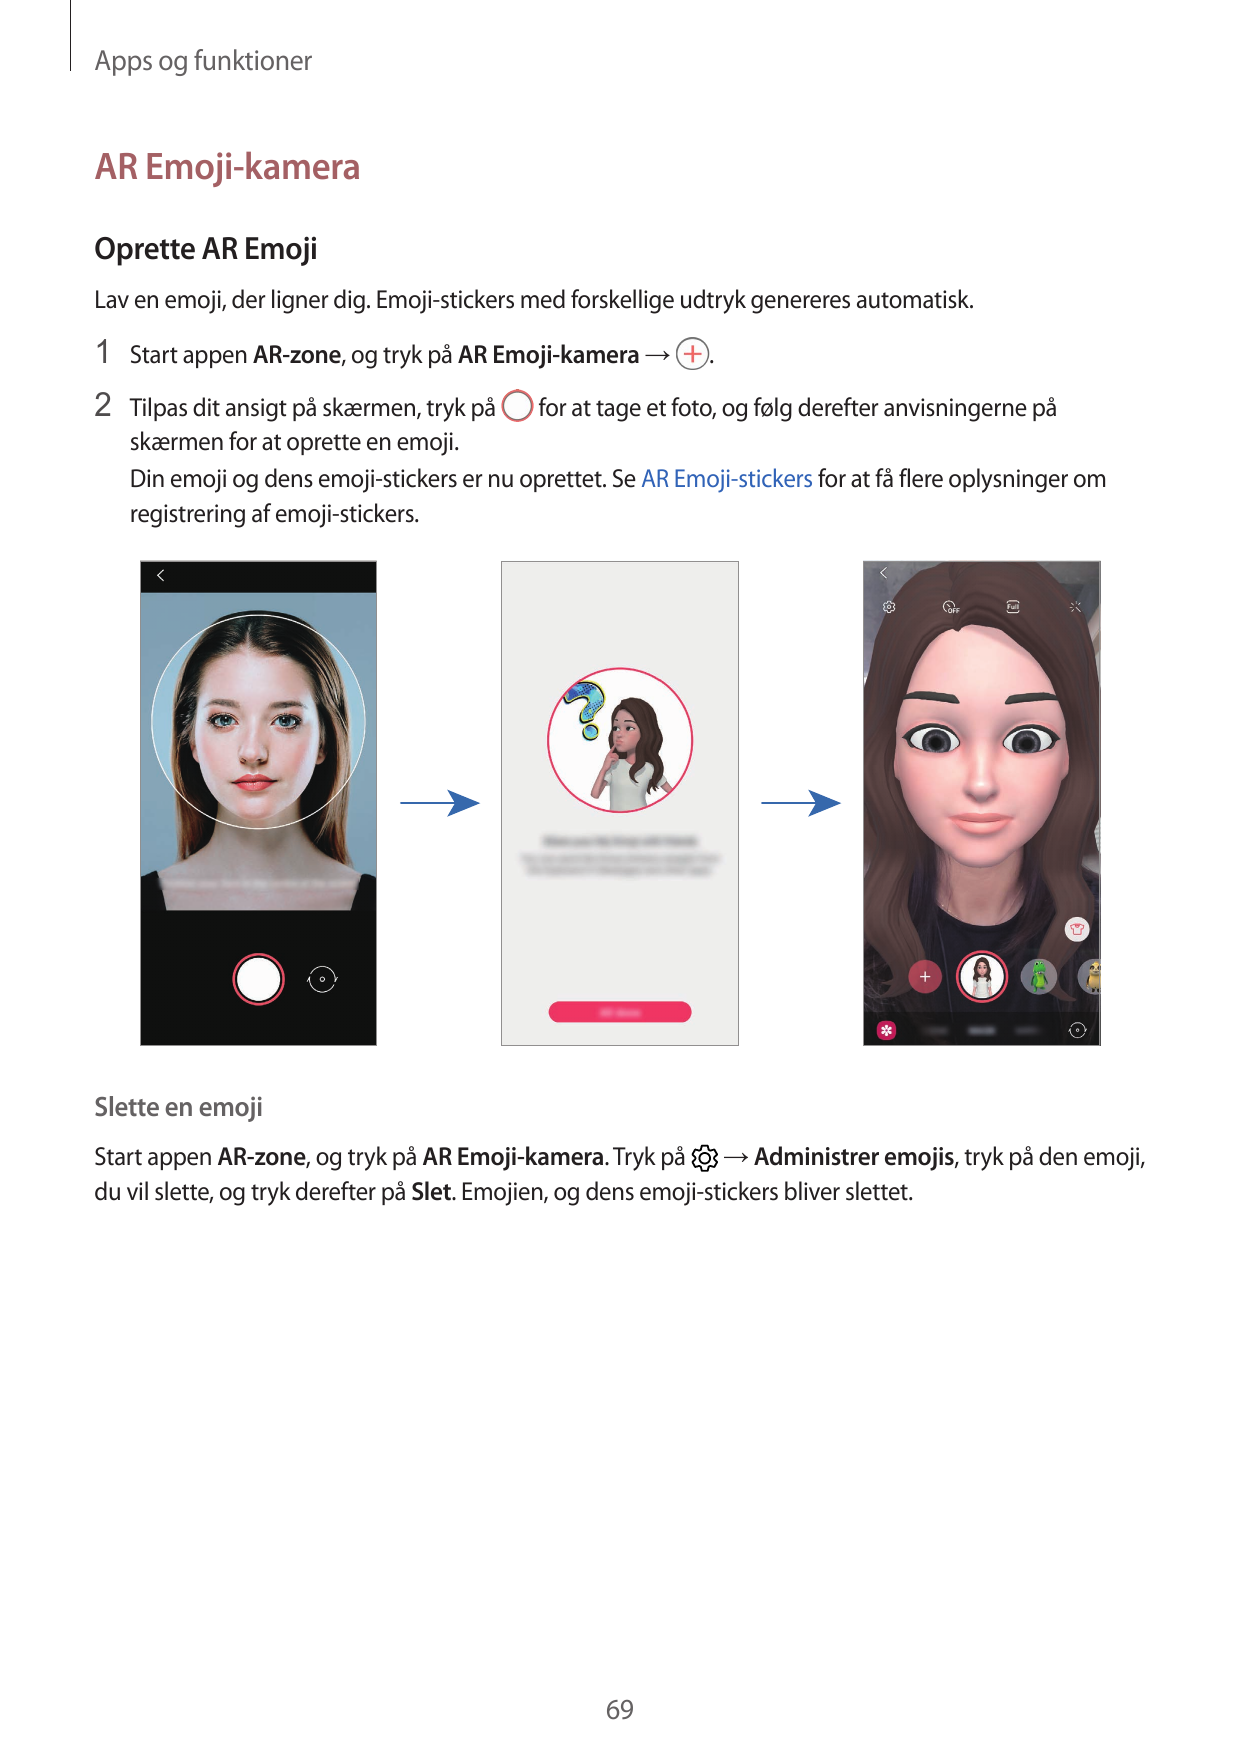 Apps og funktionerAR Emoji-kameraOprette AR EmojiLav en emoji, der ligner dig. Emoji-stickers med forskellige udtryk genereres a